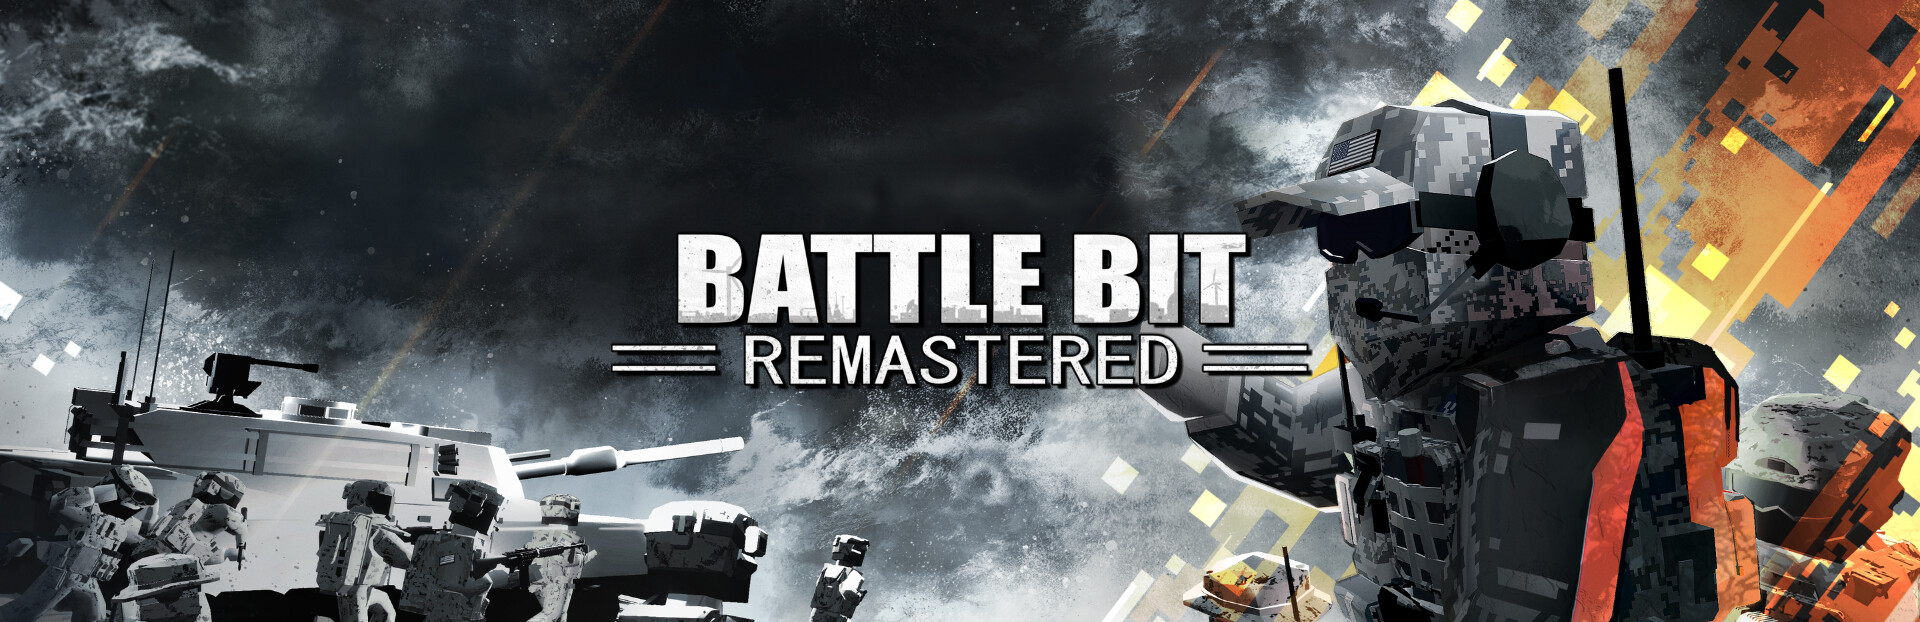 BattleBit Remastered ya ha vendido 1.8 millones de copias